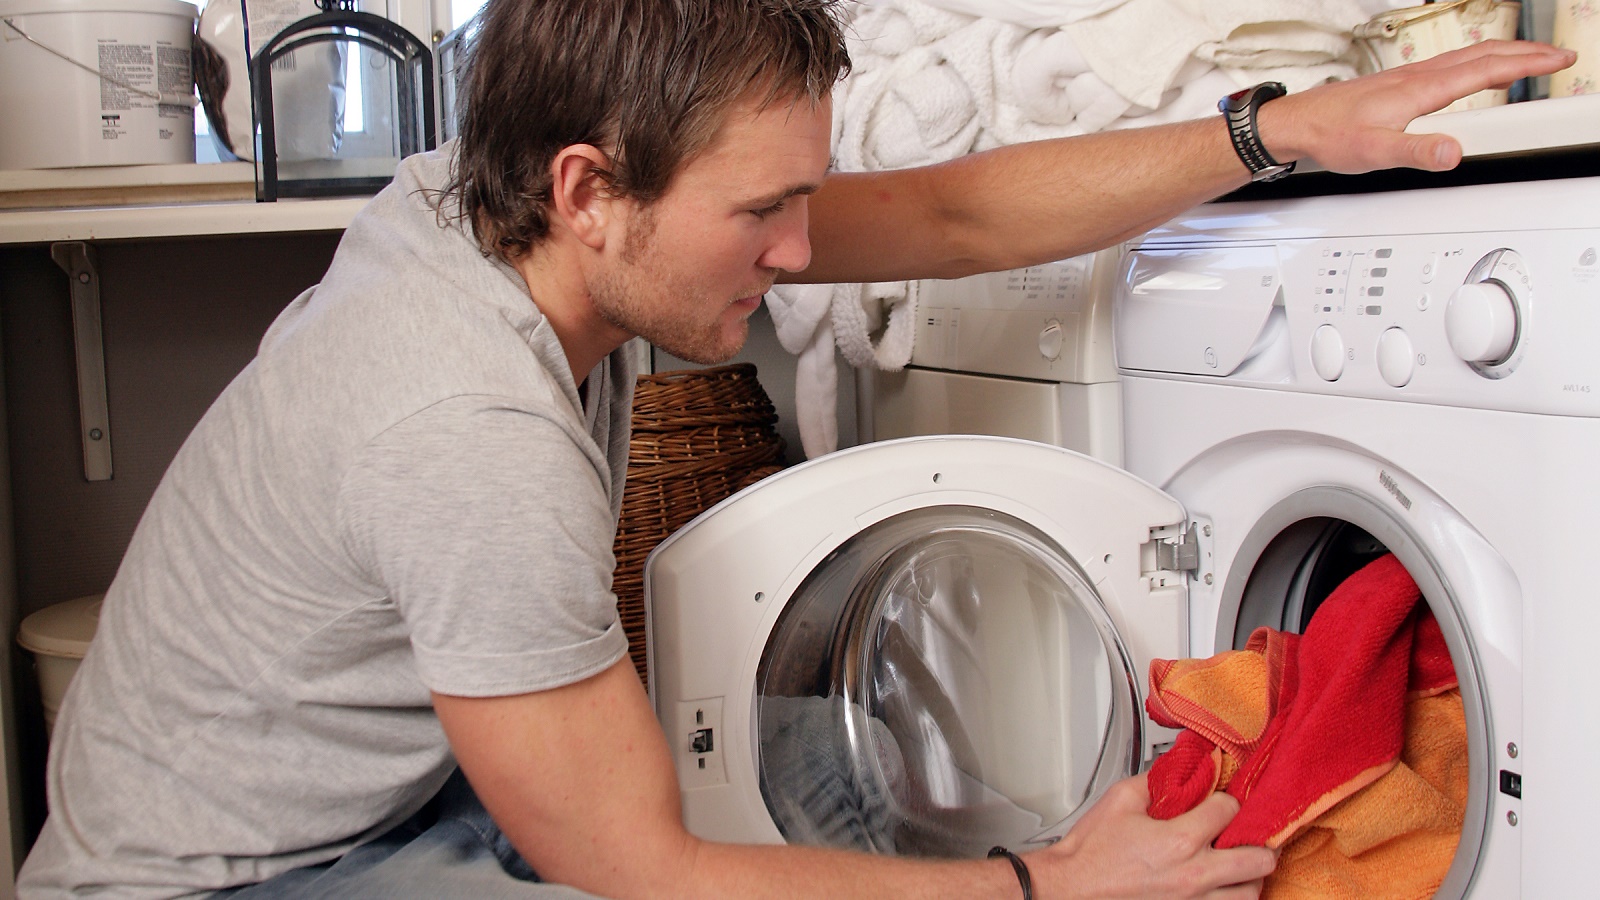 Fonetik seng længst Renovationsarbejdere skal selv vaske arbejdstøjet - DI